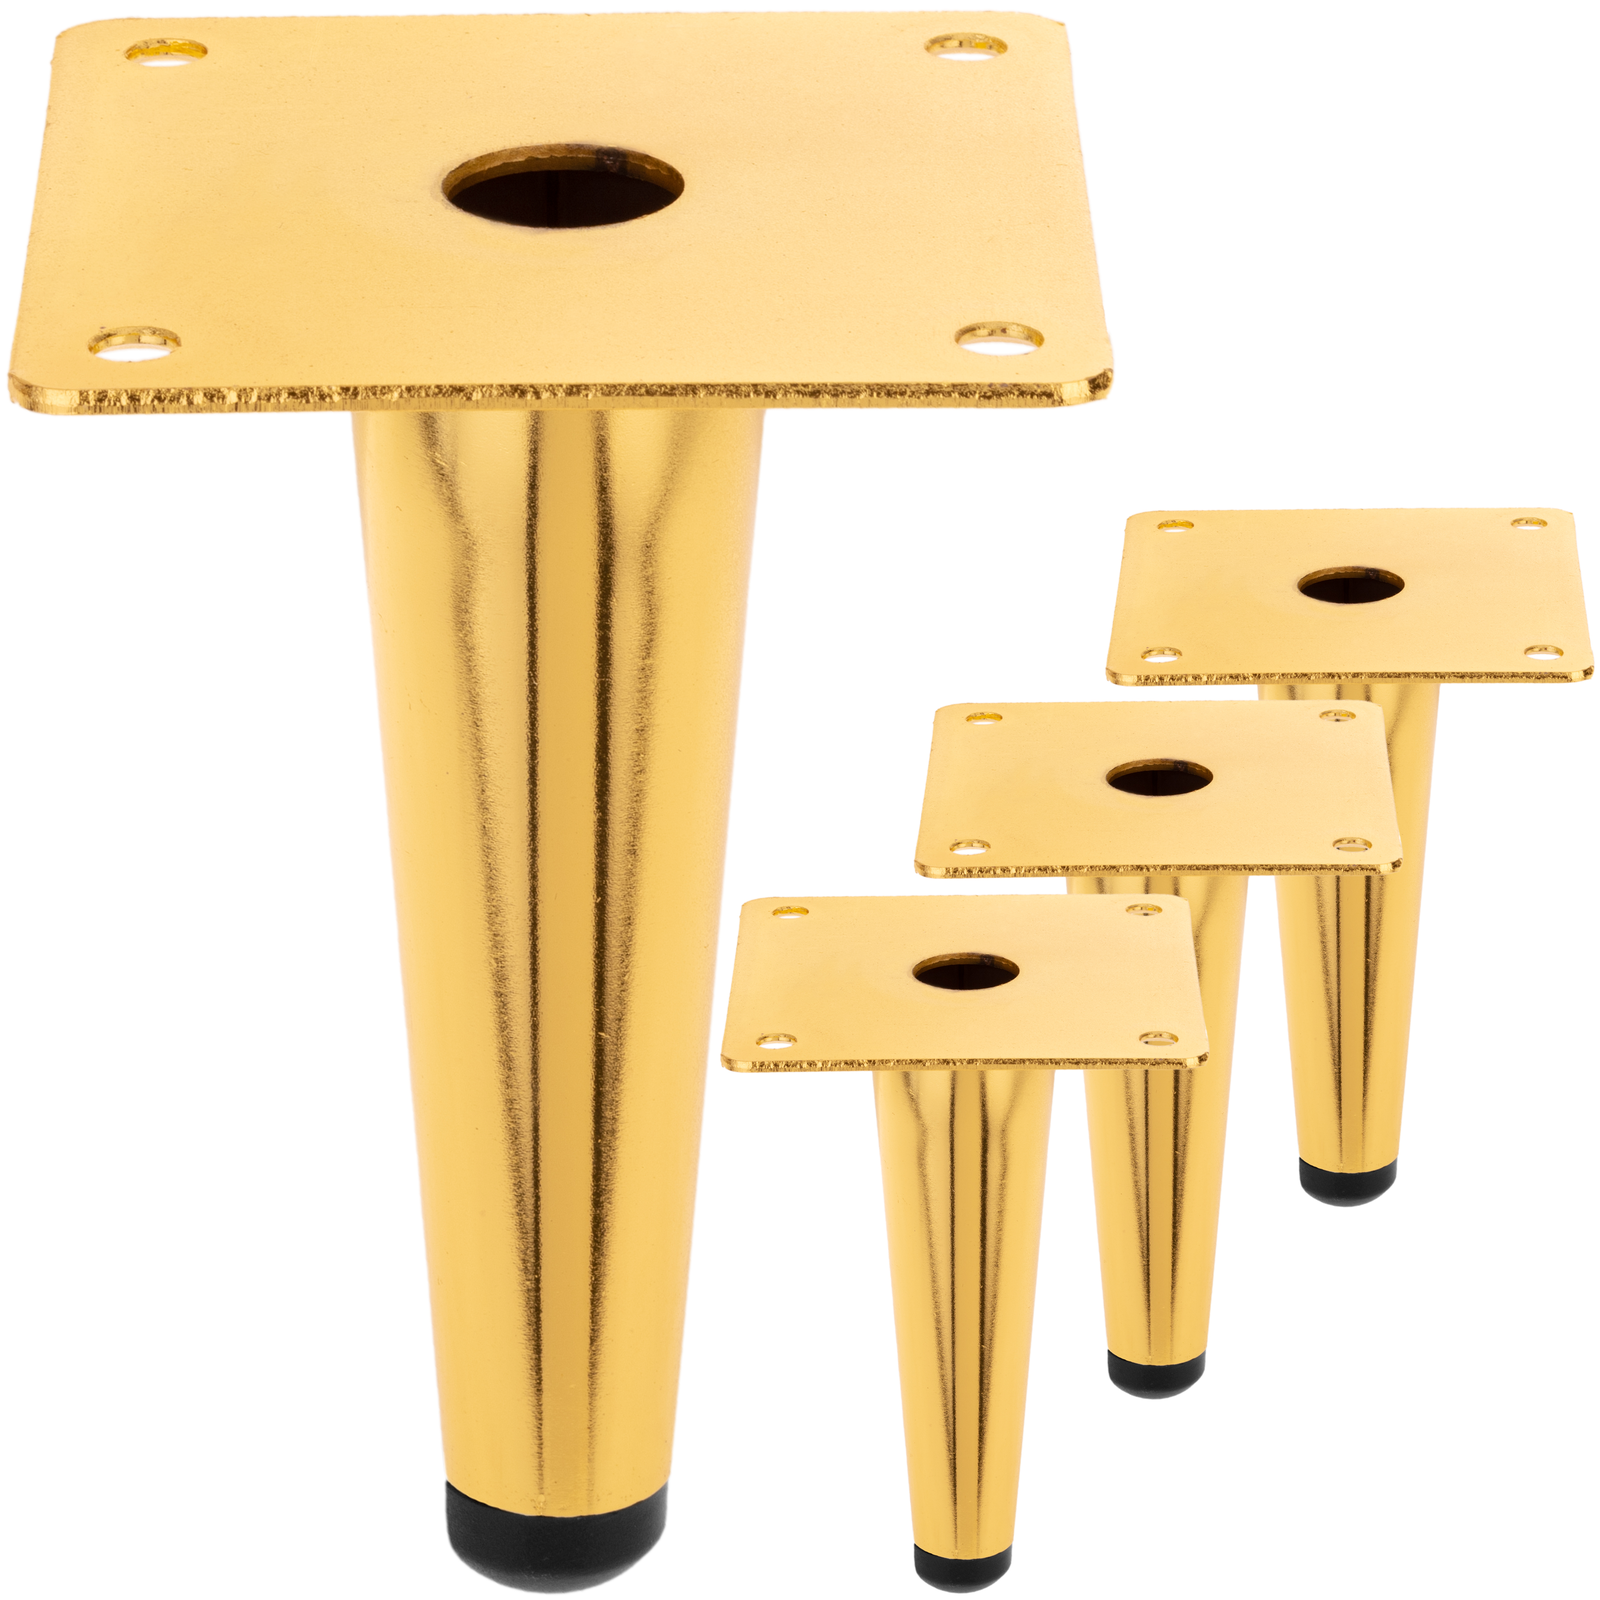 Pack de 4 patas rectas para muebles con forma cónica y protección  antideslizante de 20cm color dorado - Hiper Electrón